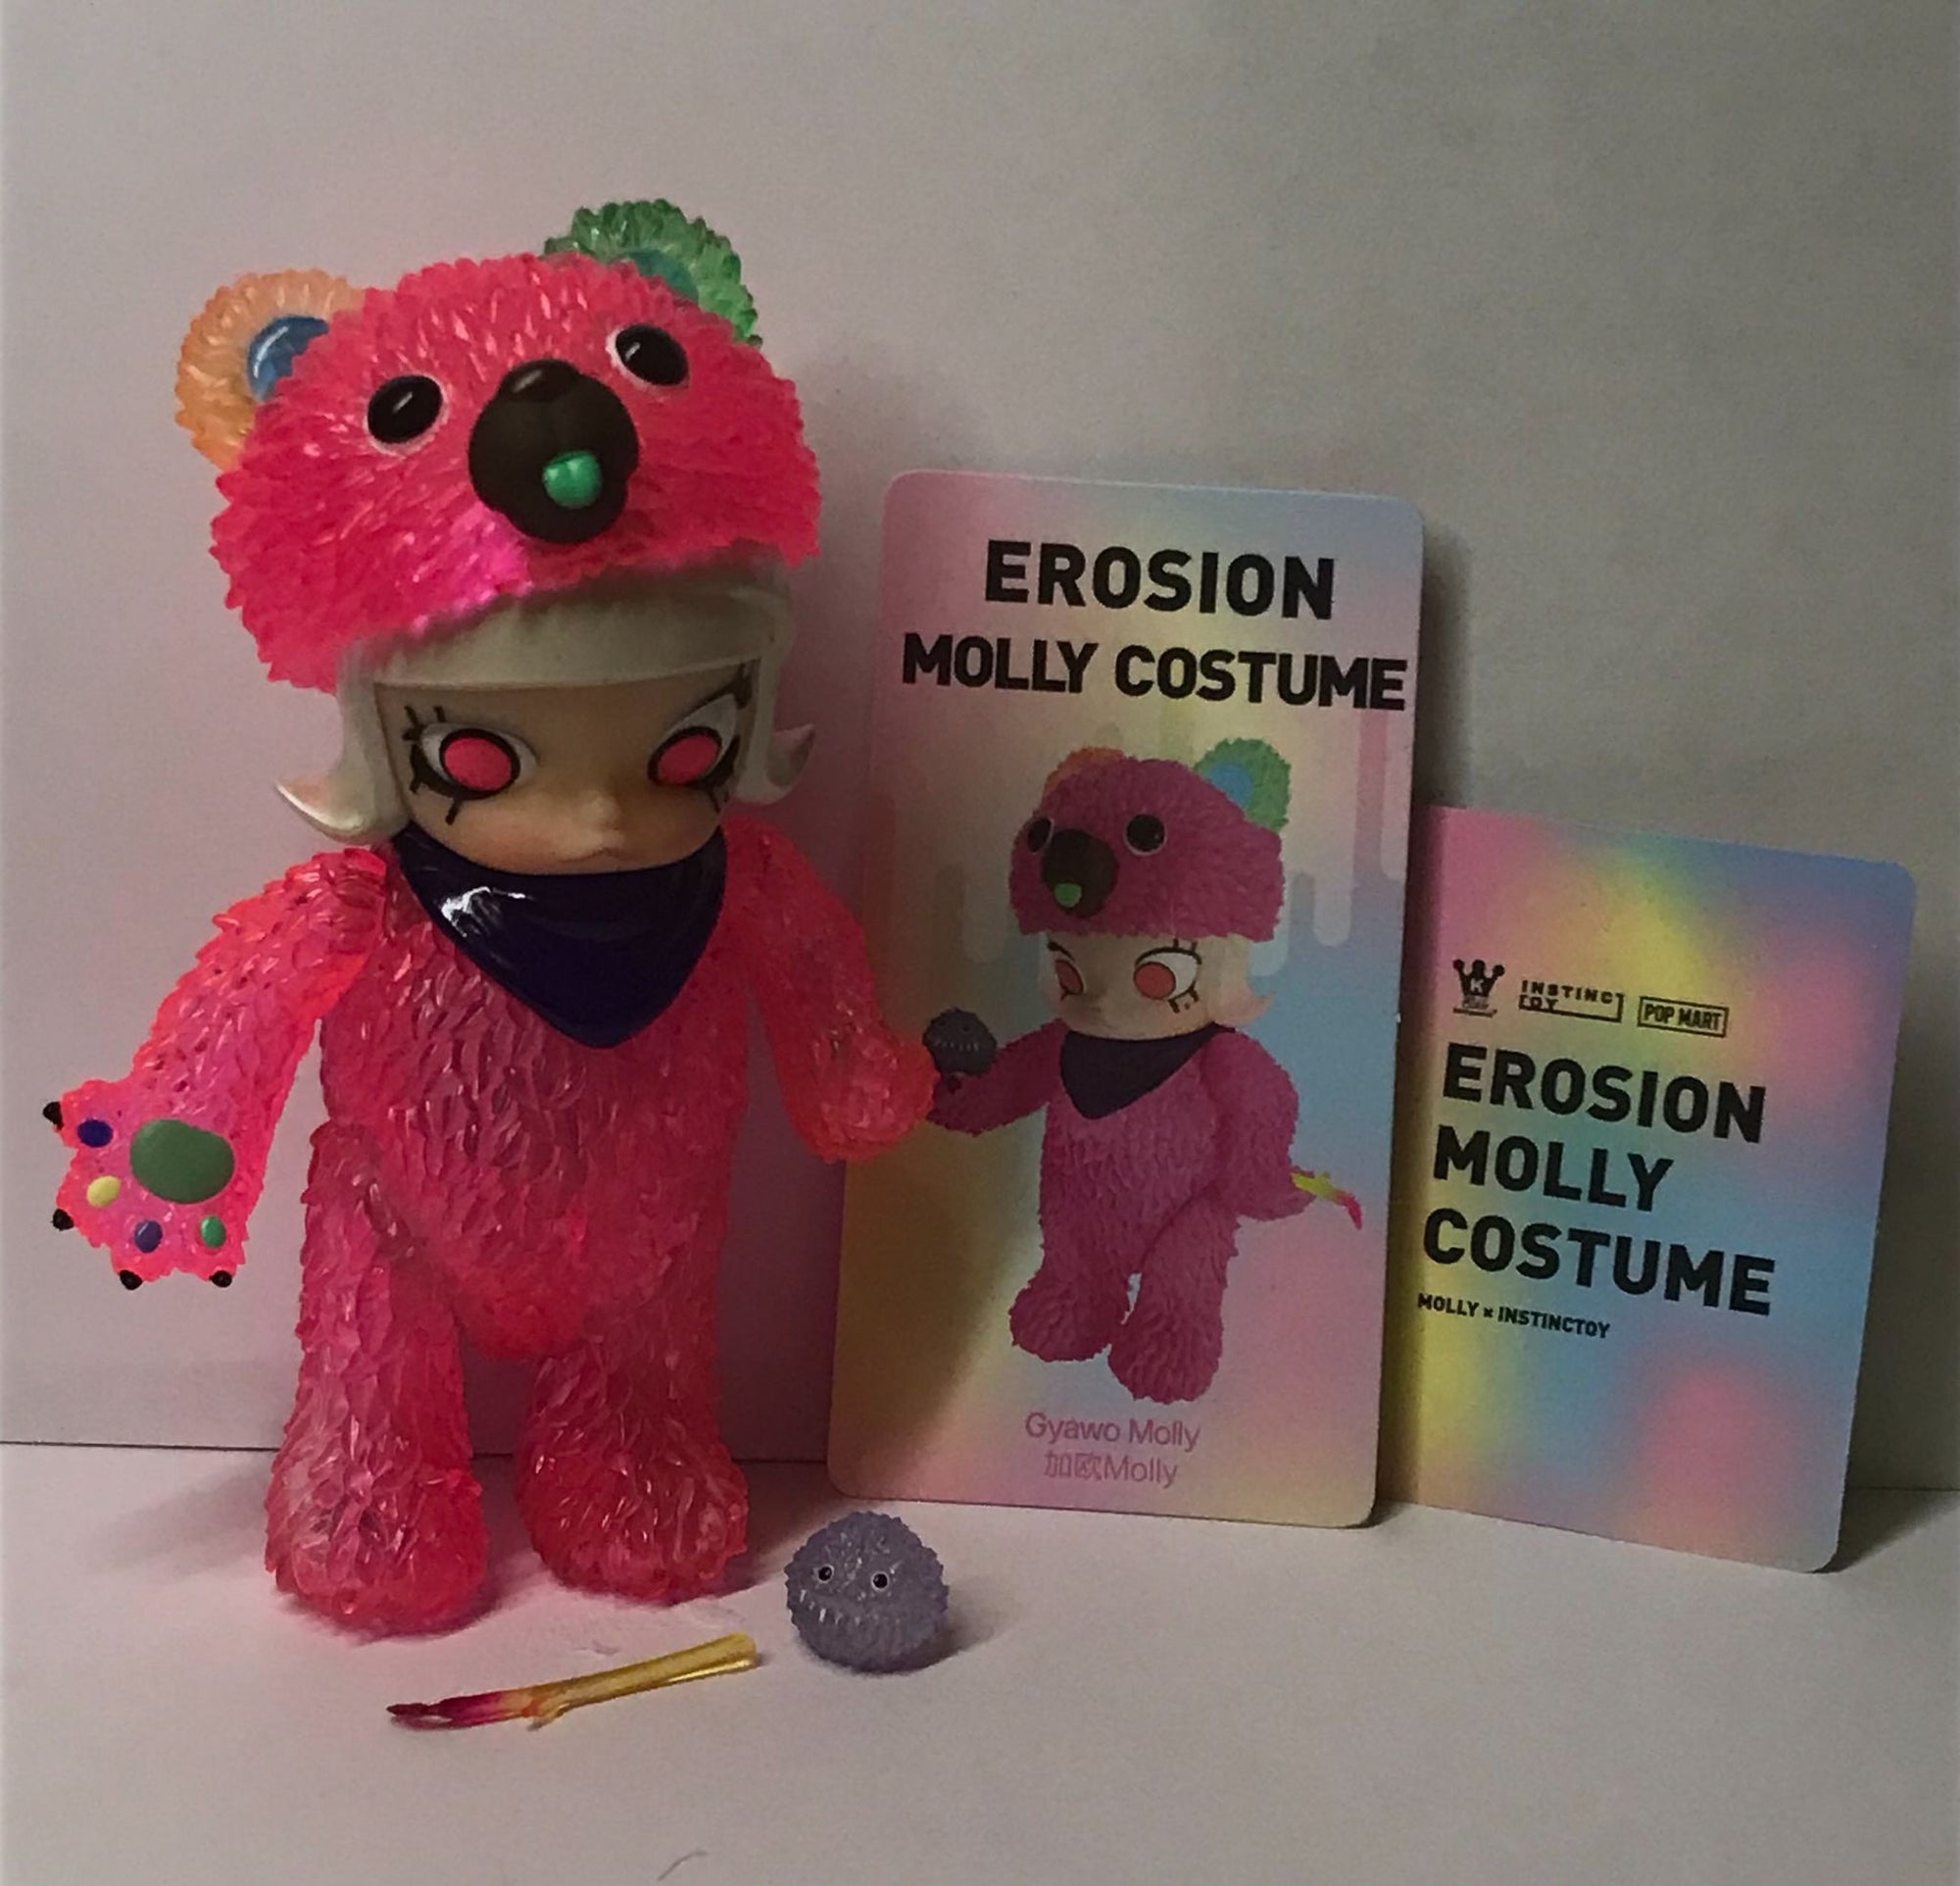 Gyawo Molly-Erosion Molly Costume-POP MART - 1